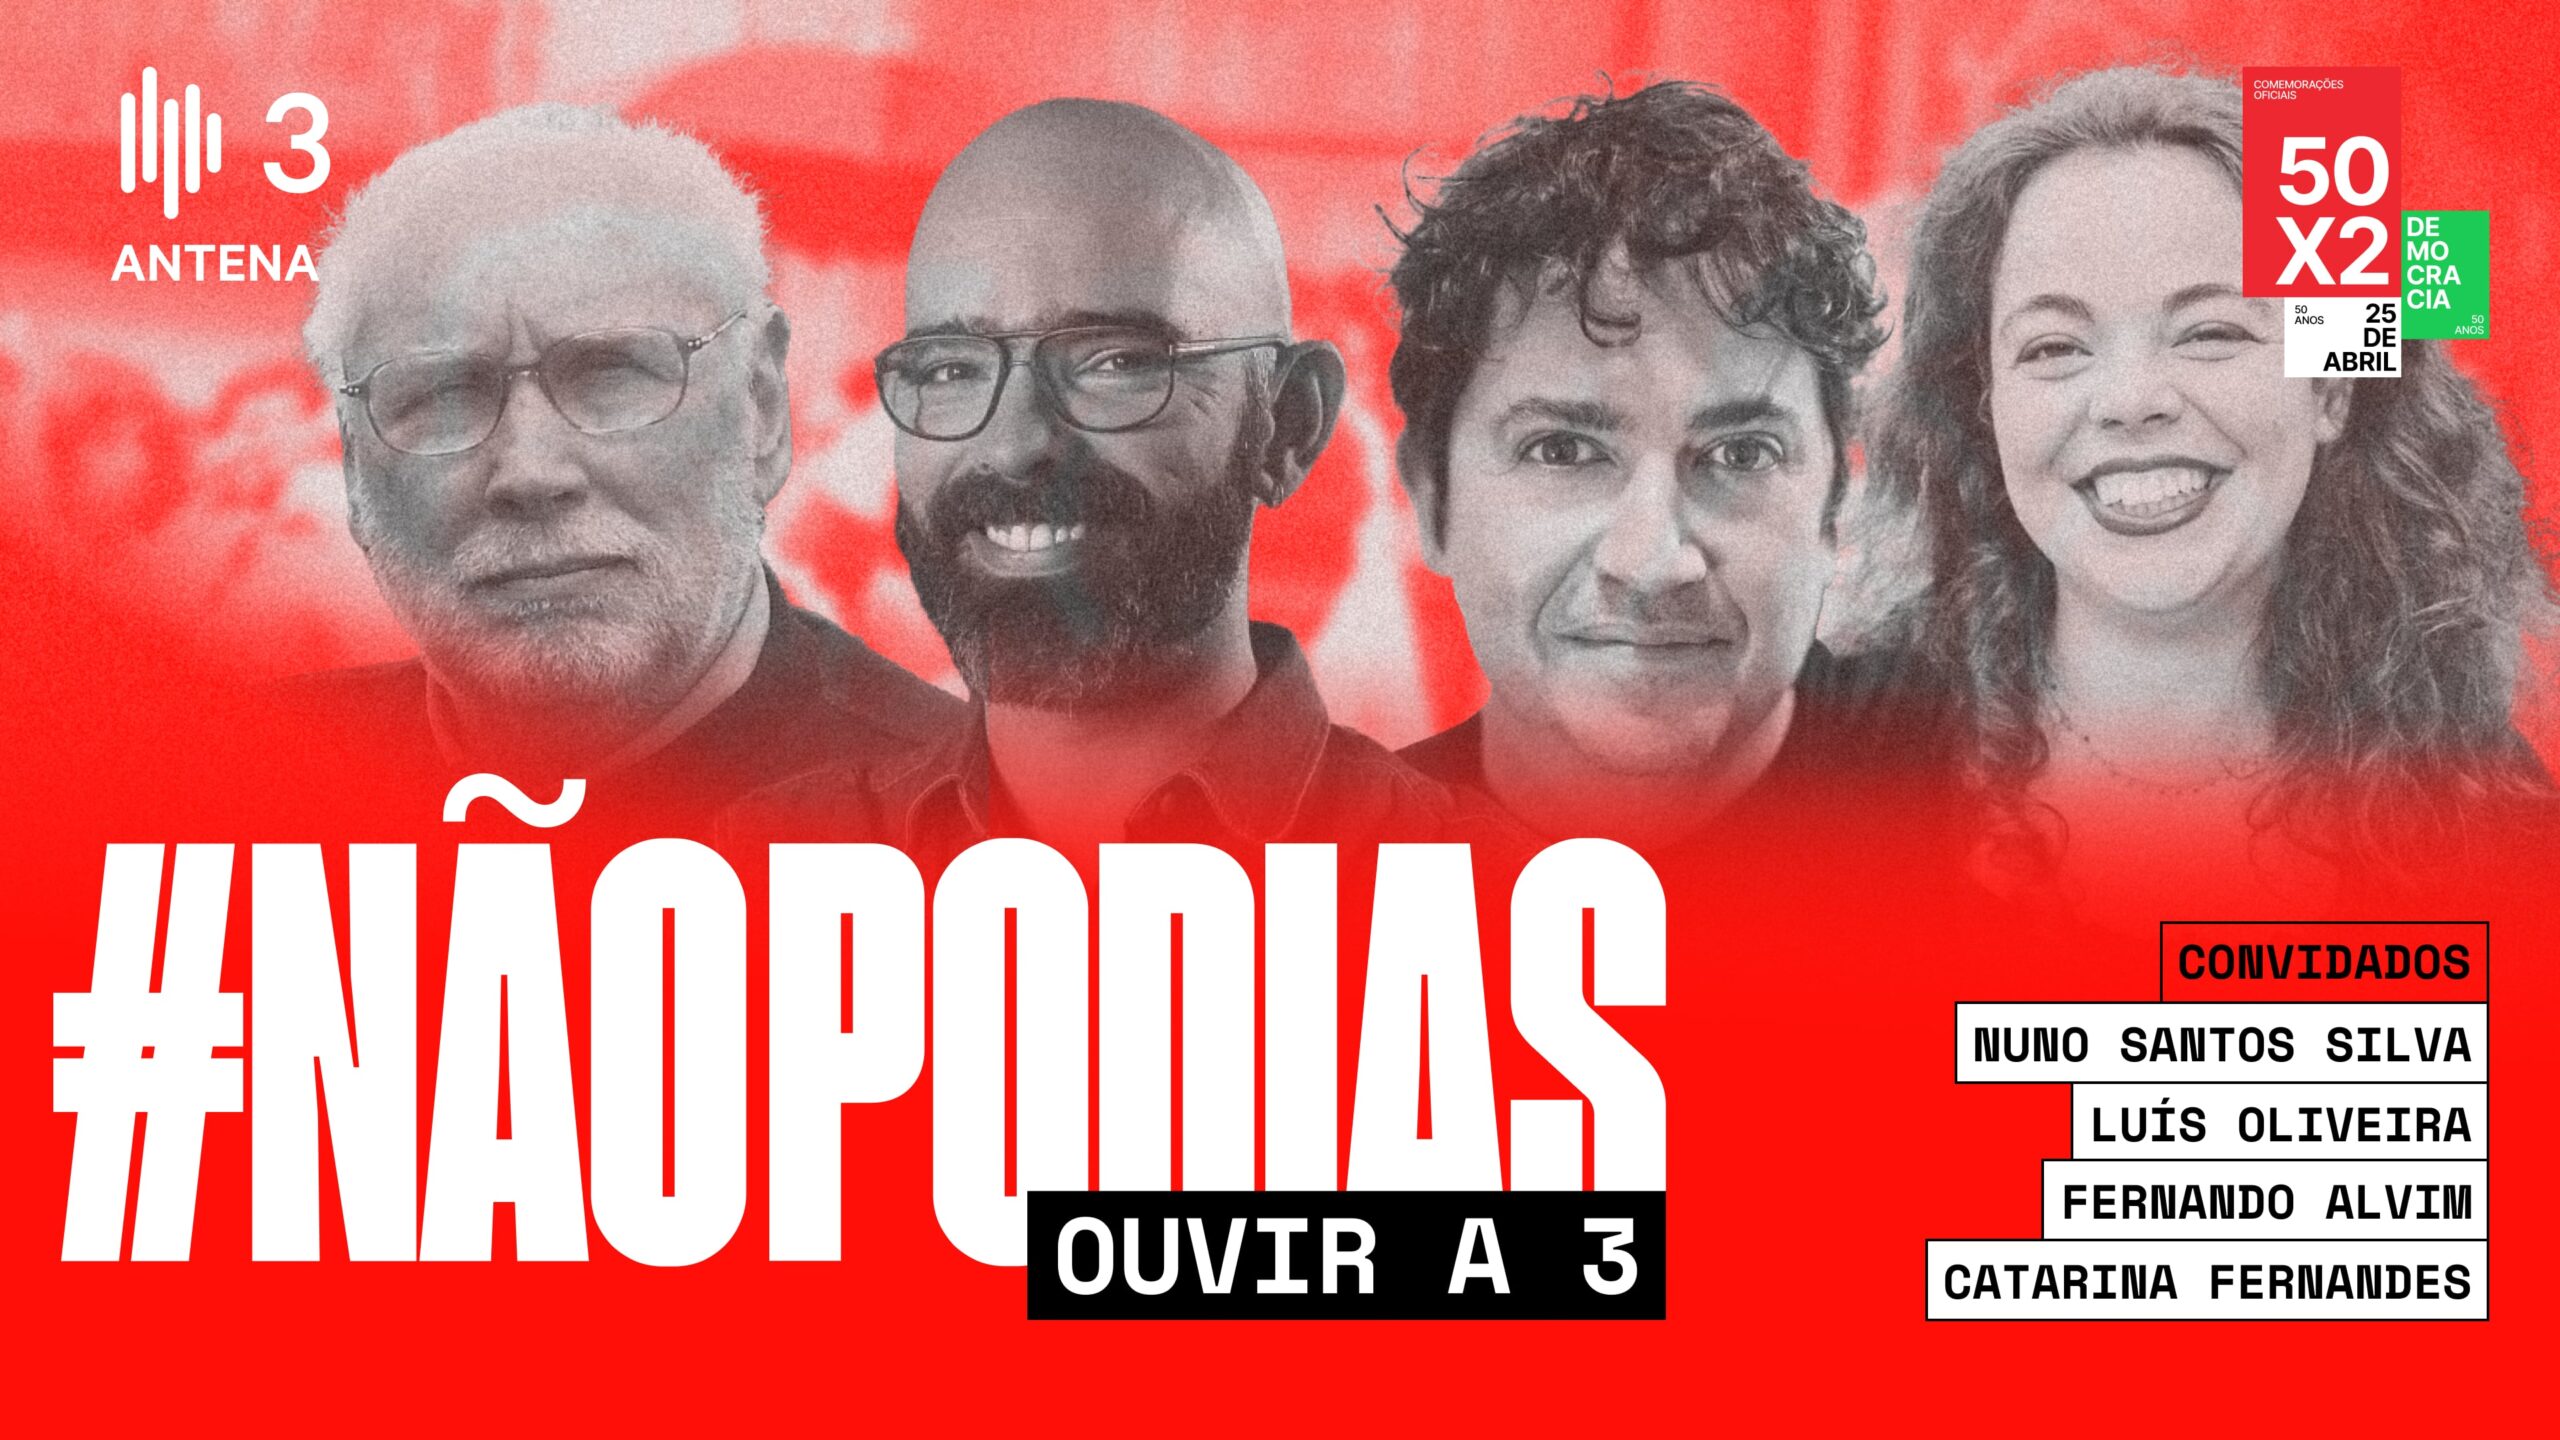 Capa Oficial do Evento Antena 3 • #NãoPodias Ouvir a 3